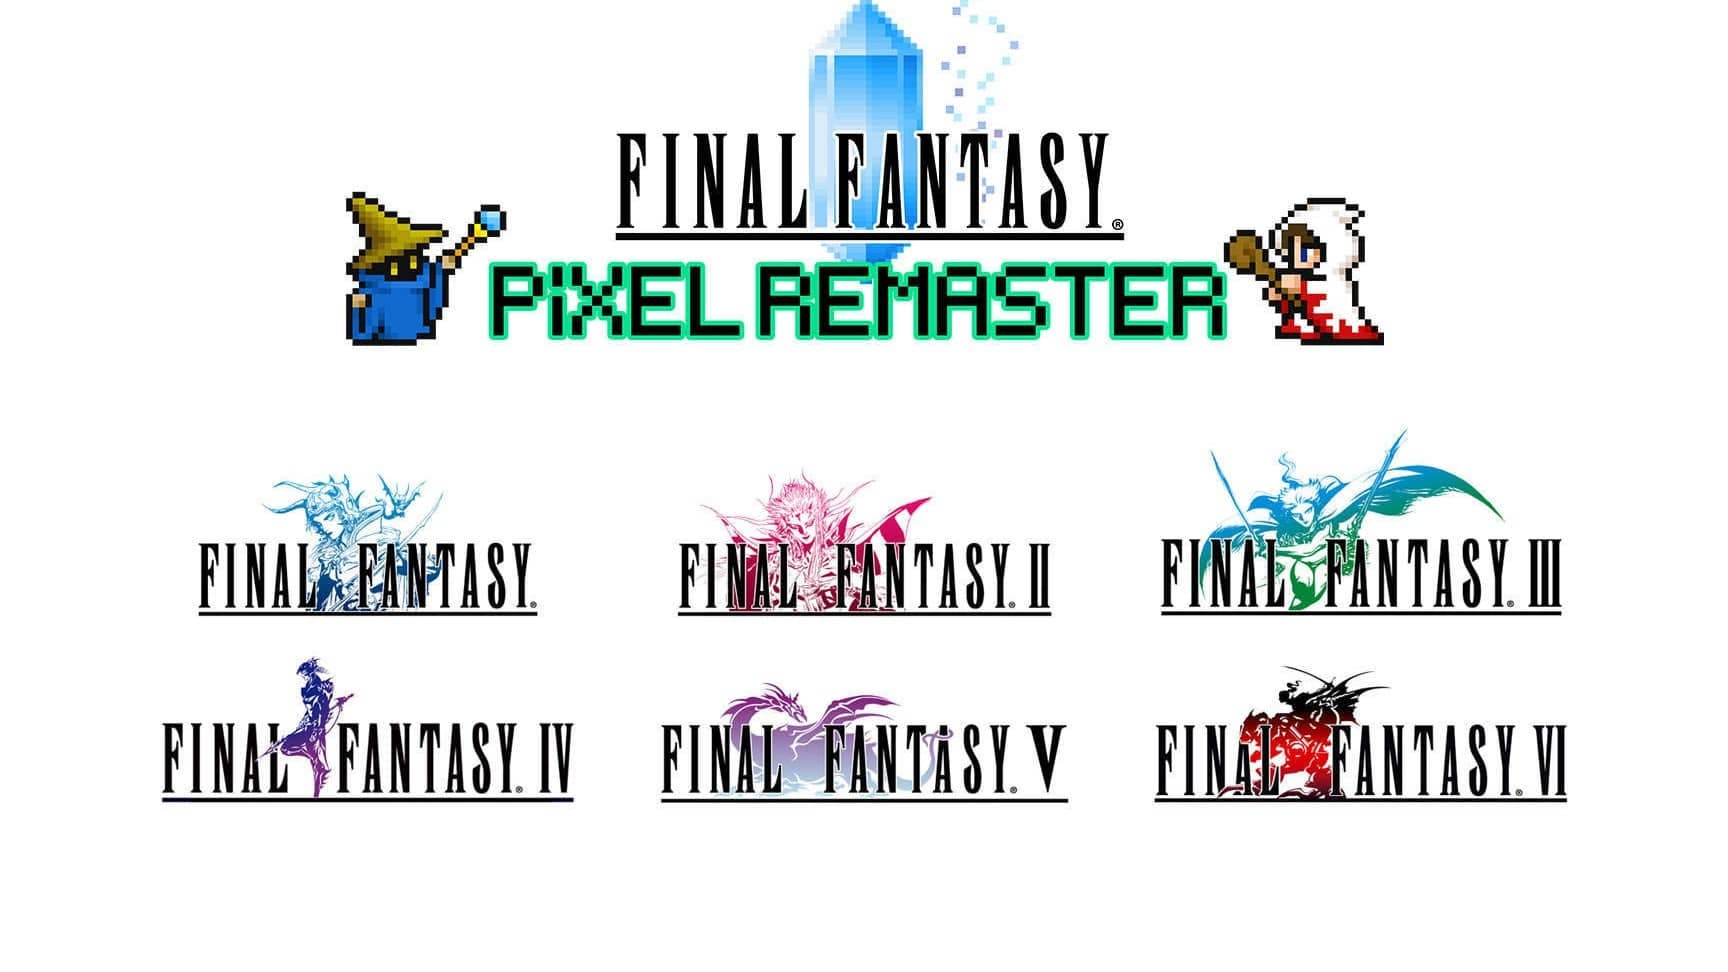 Tamaño de la descarga de Final Fantasy Pixel Remaster Collection en pack y por separado